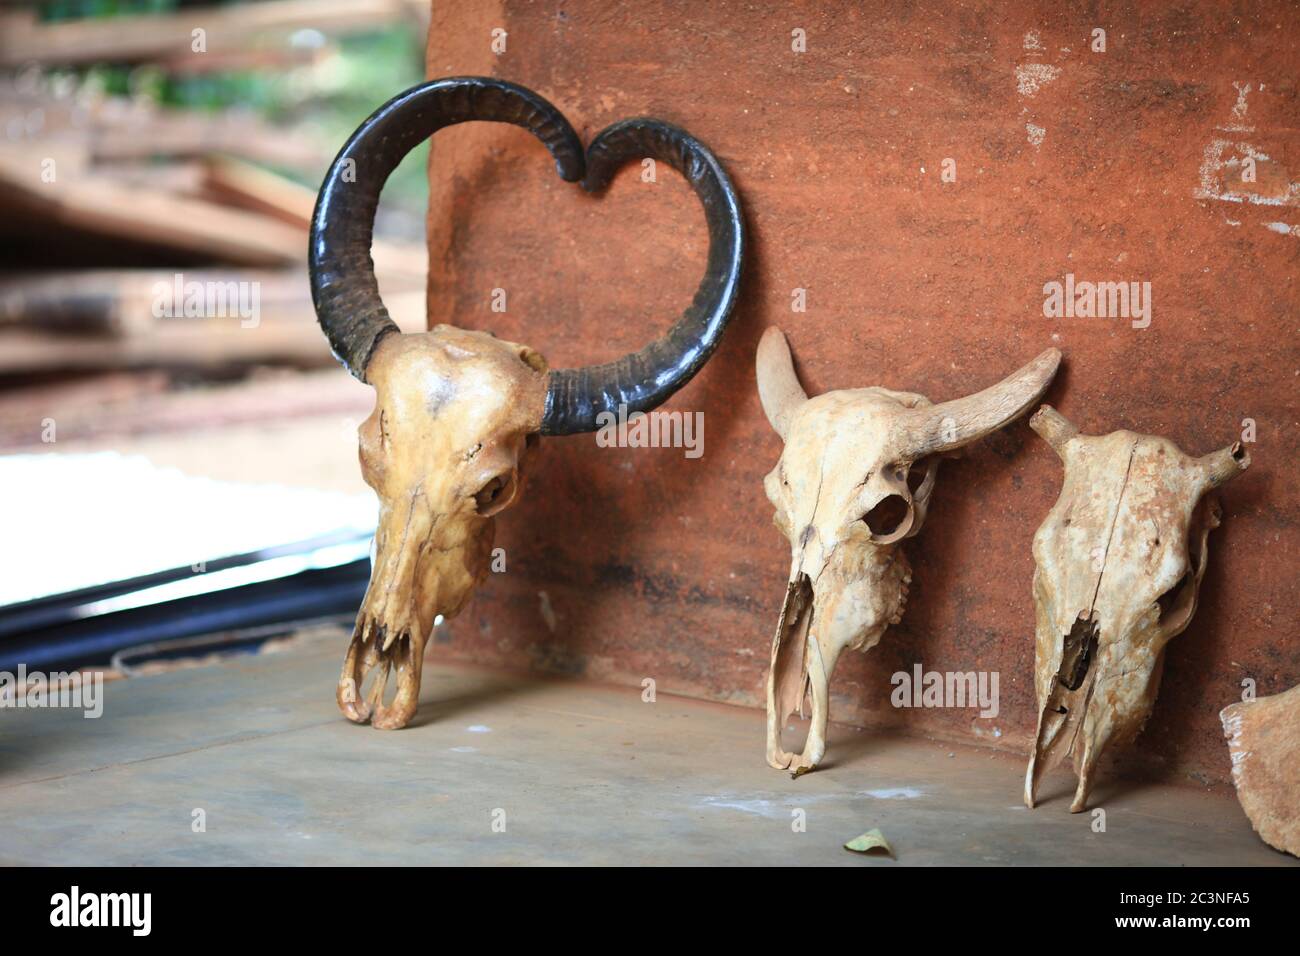 Knochen von Tieren. Trophäe des Vedda (veddha) Stammes von Sri lanka. Hergestellt in einem Dorf Stockfoto